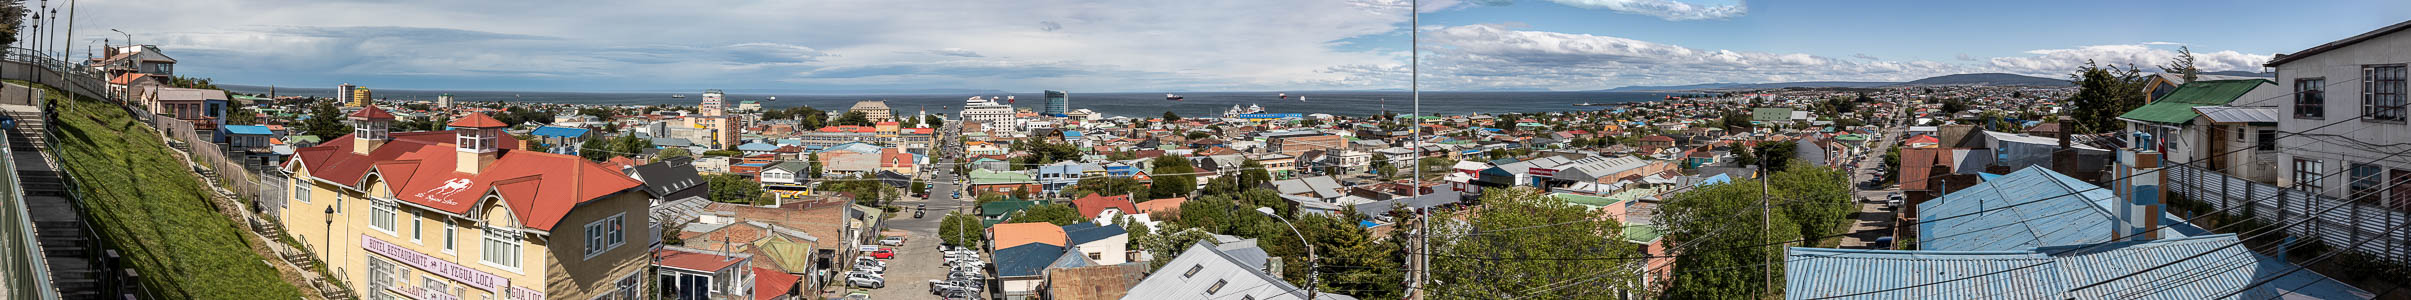 Punta Arenas Blick vom Aussichtspunkt Cerro de la Cruz: Stadtzentrum und Magellanstraße